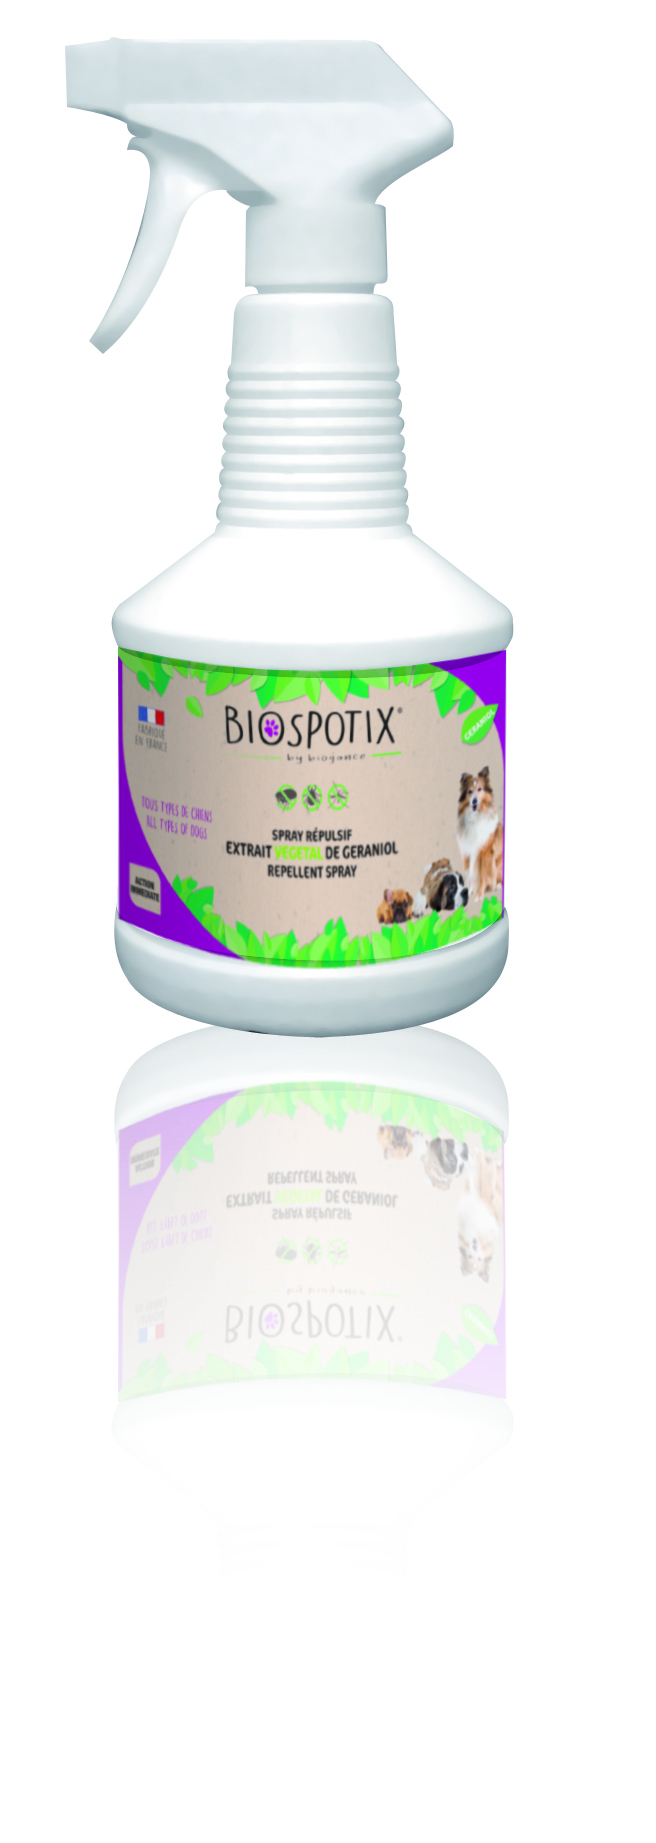 Biospotixspray für Hunde